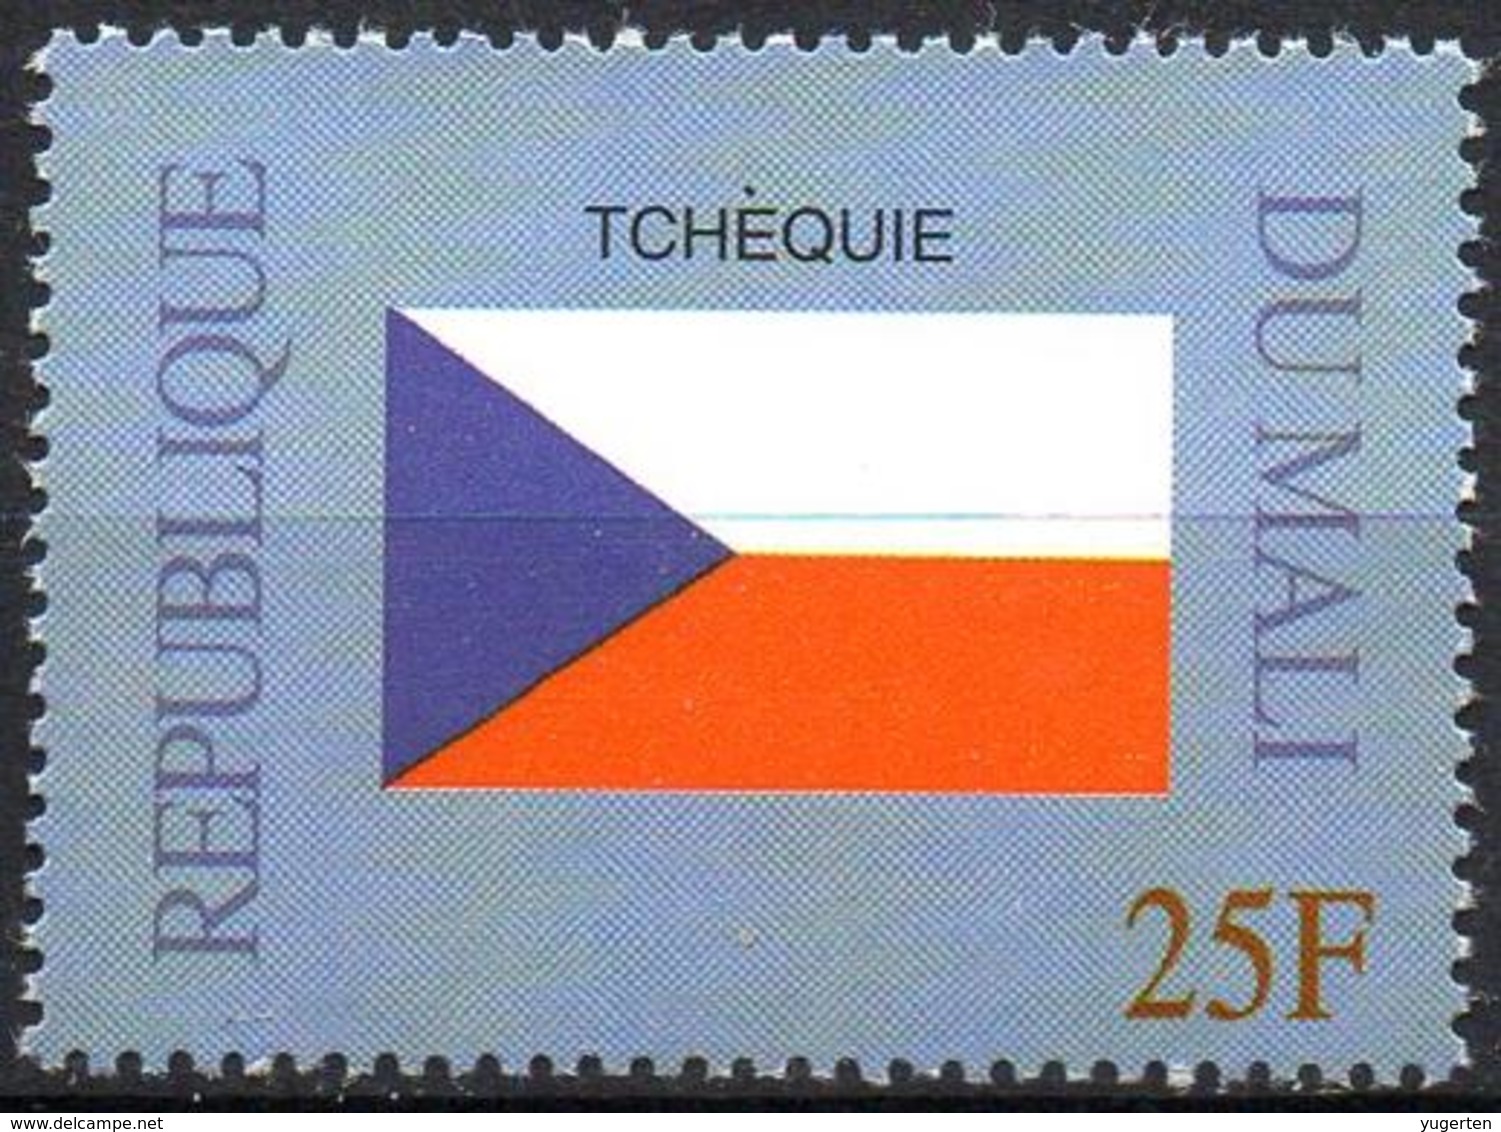 MALI 1999 - 1v - MNH** - Flag Of Czech Republic Tchéquie Flags Drapeaux Fahnen Bandiere Banderas флаги - Francobolli